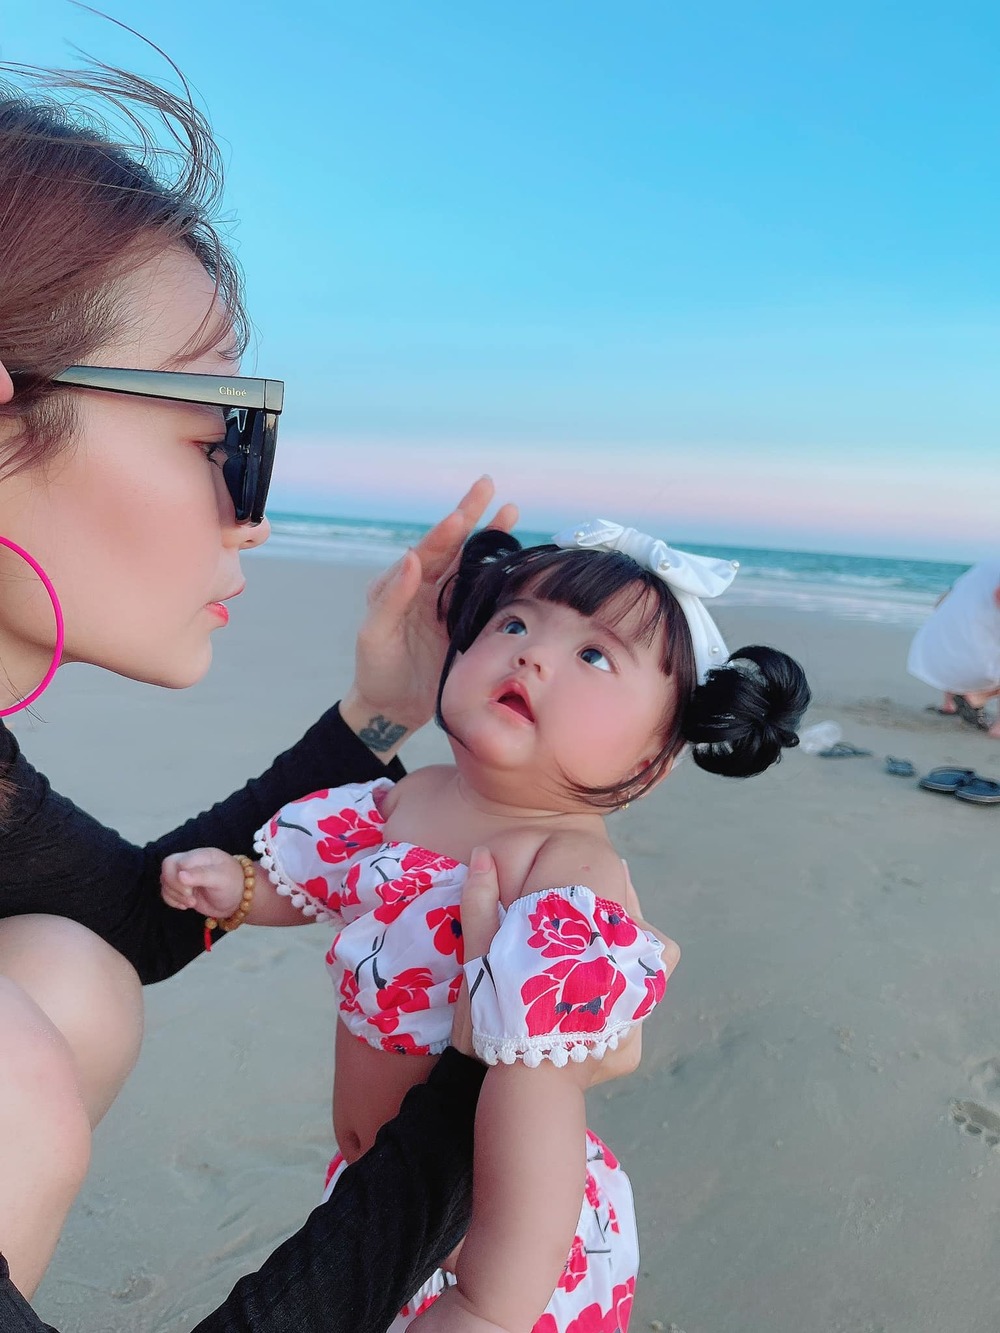  
Bé Minnie thích thú khi được mẹ cho đi biển chơi. (Ảnh: FBNV)